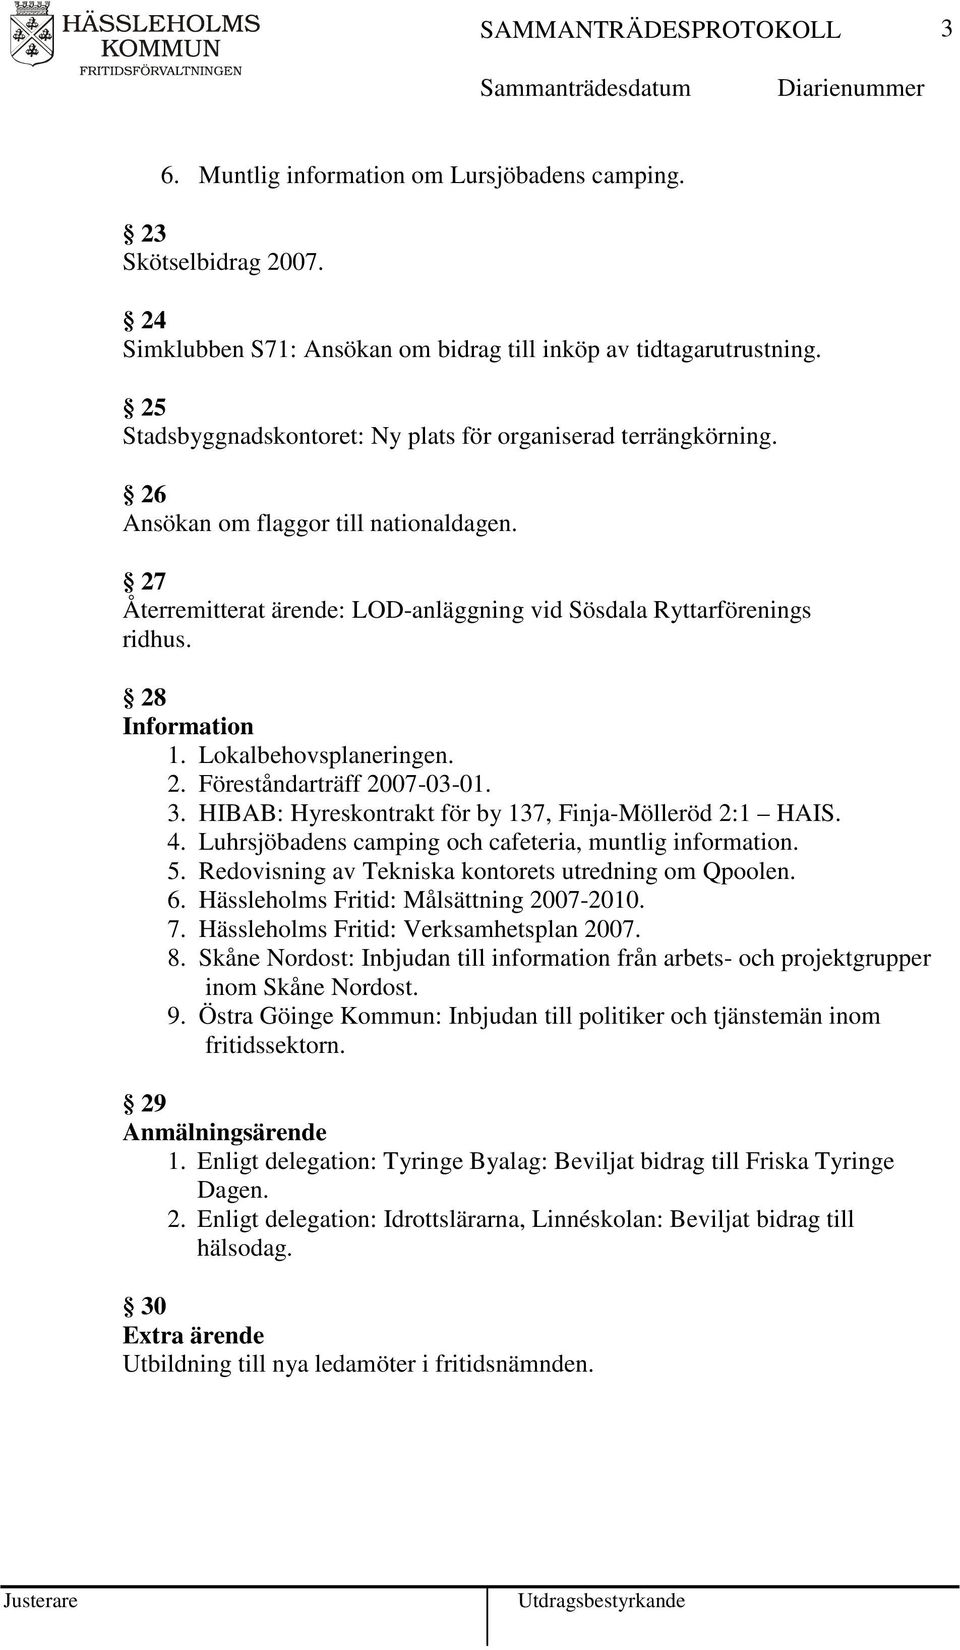 Lokalbehovsplaneringen. 2. Föreståndarträff 2007-03-01. 3. HIBAB: Hyreskontrakt för by 137, Finja-Mölleröd 2:1 HAIS. 4. Luhrsjöbadens camping och cafeteria, muntlig information. 5.